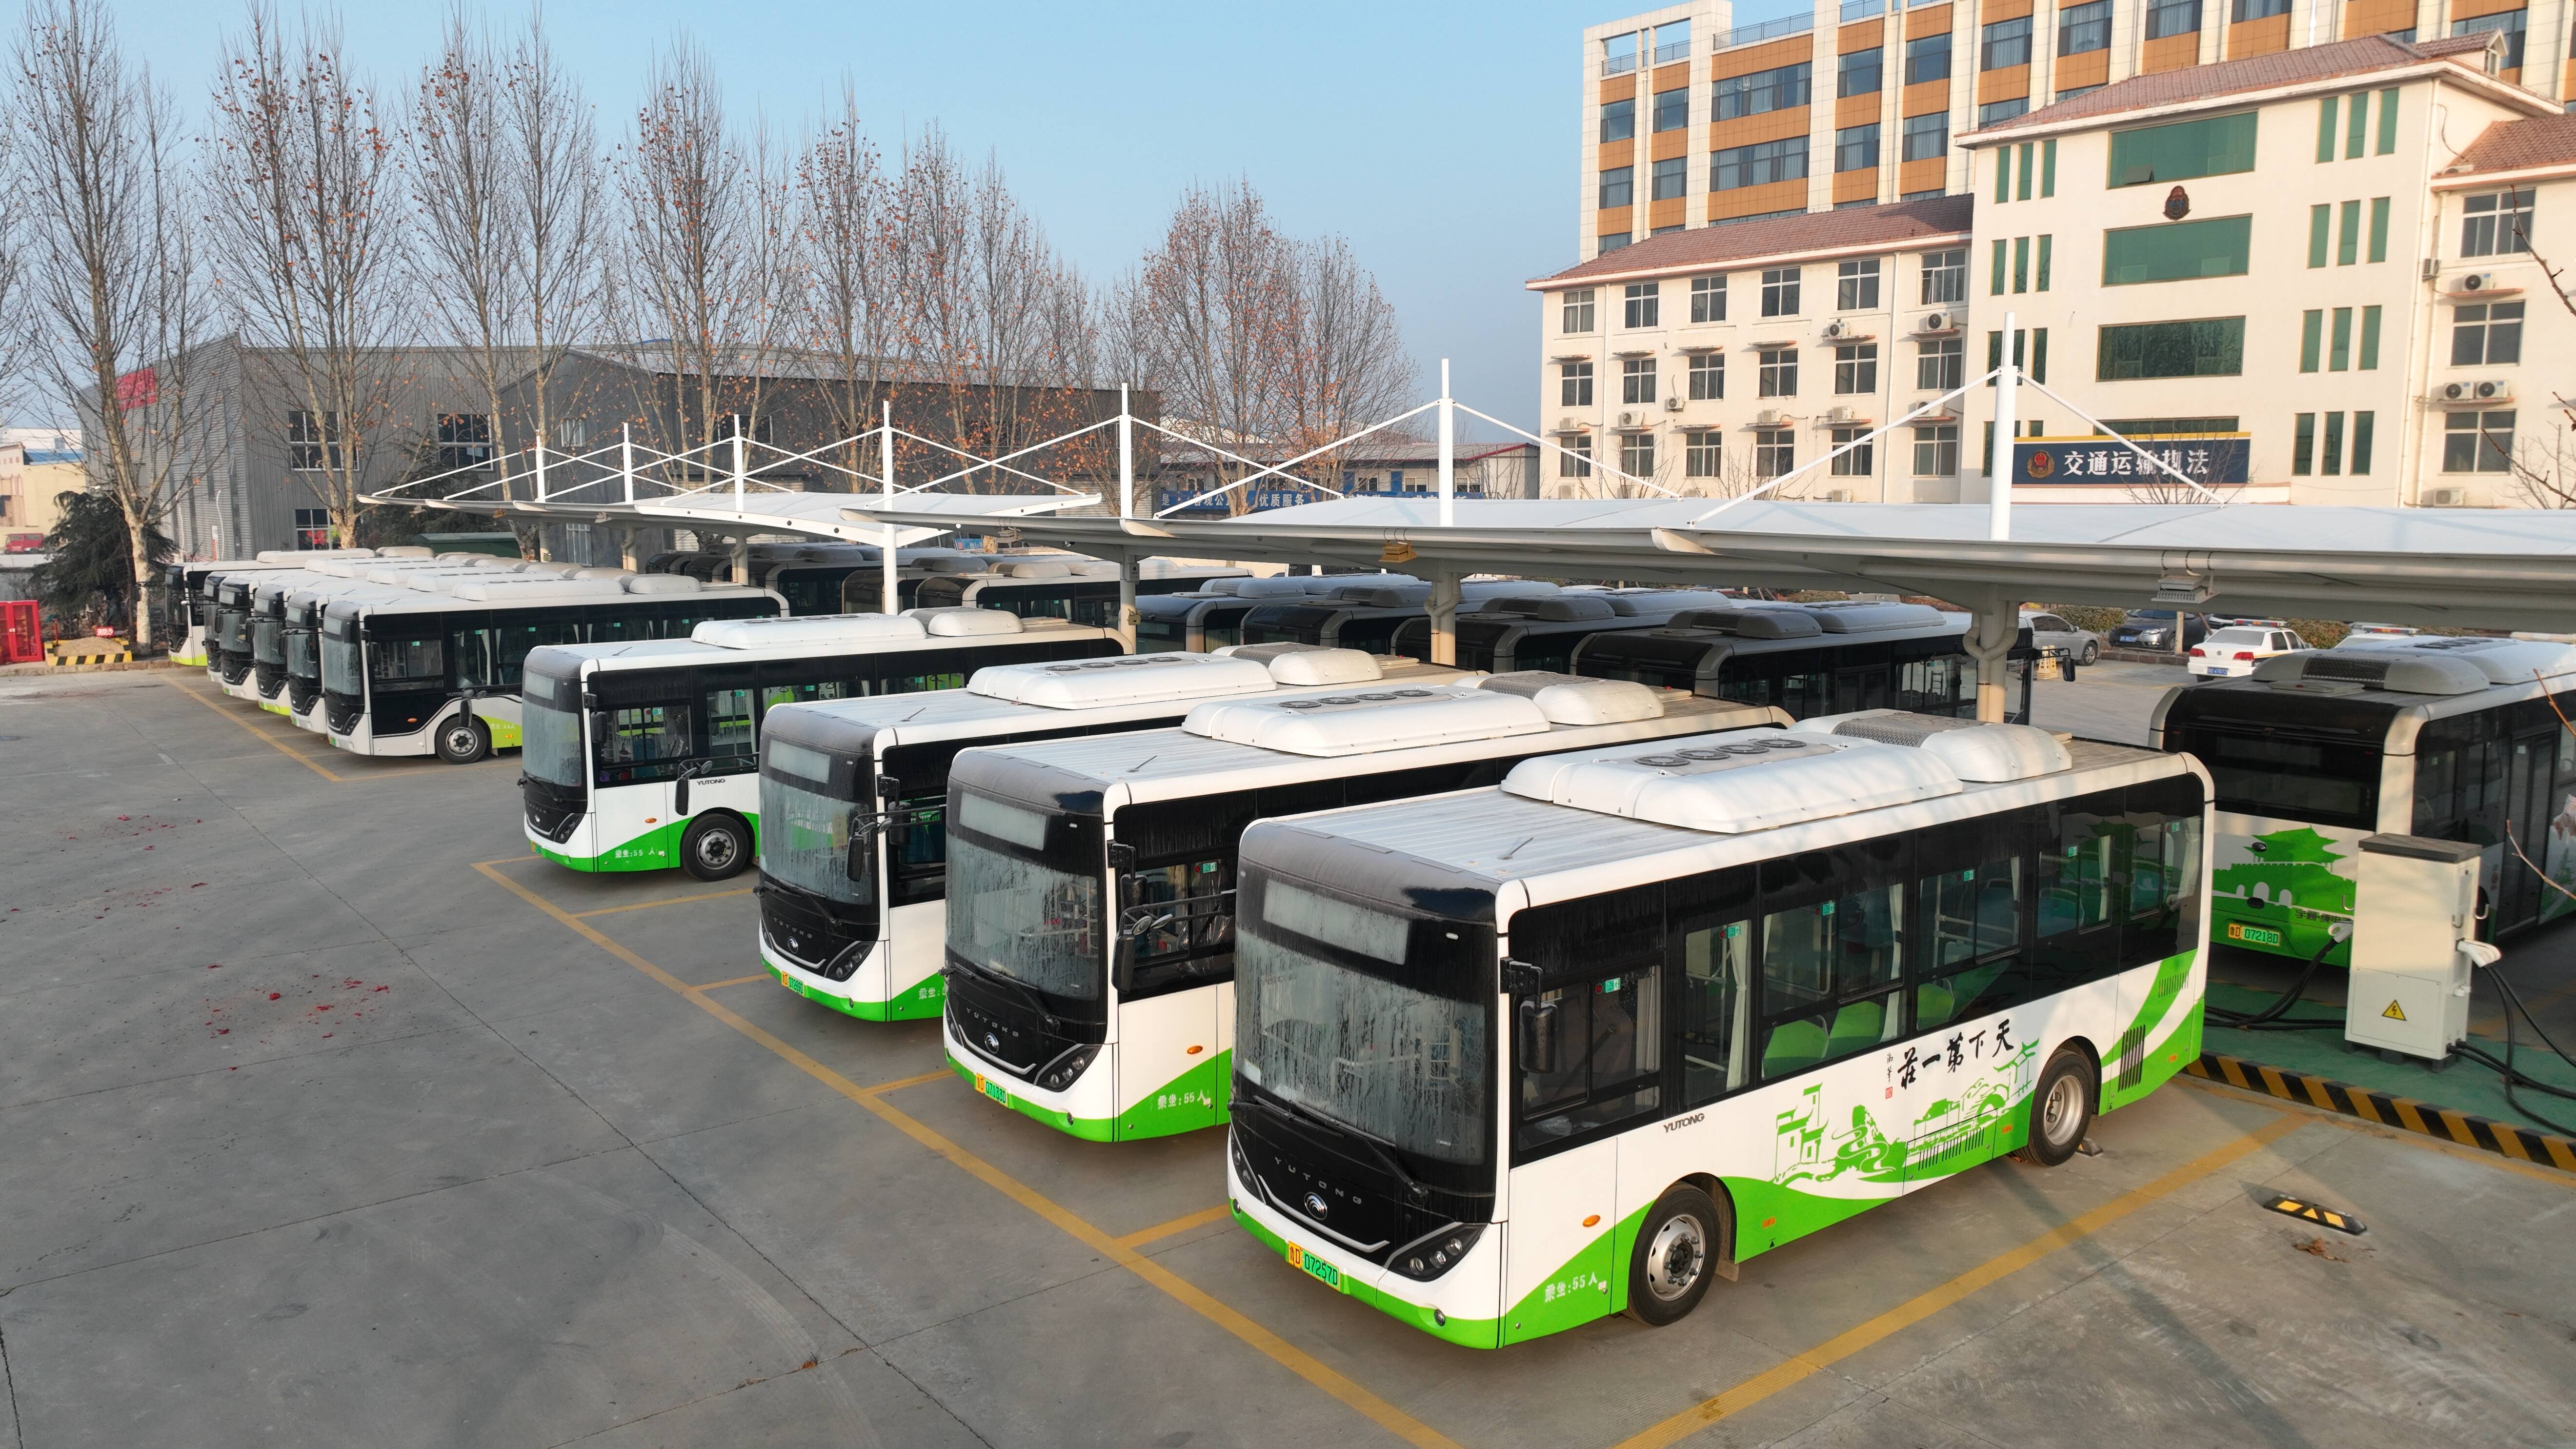 枣庄市台儿庄区27辆新能源纯电动公交车投入运营